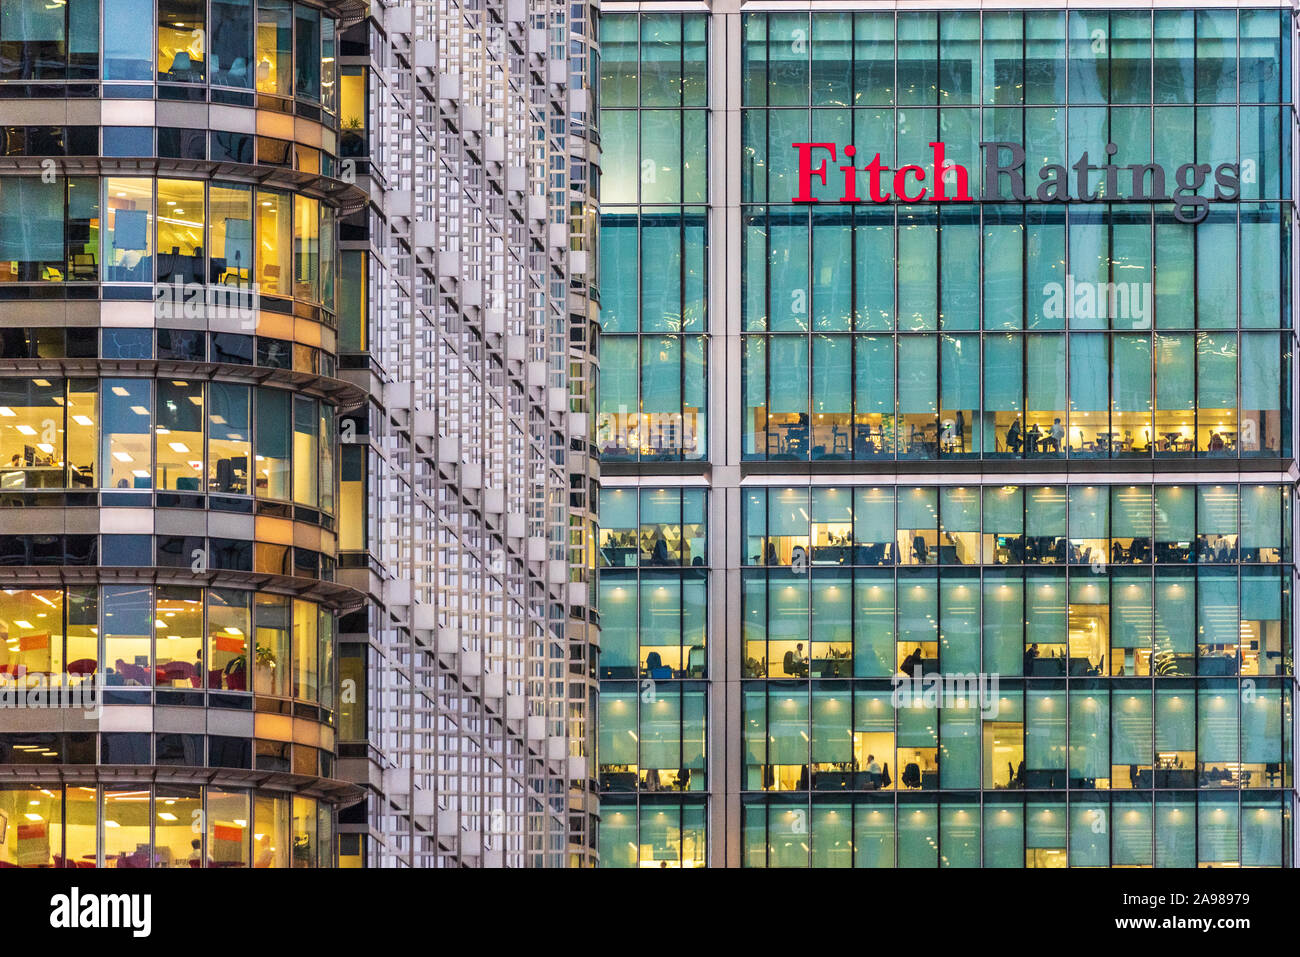 Fitch Ratings HQ Global Londres - la torre de Fitch Ratings en Canary Wharf London Foto de stock